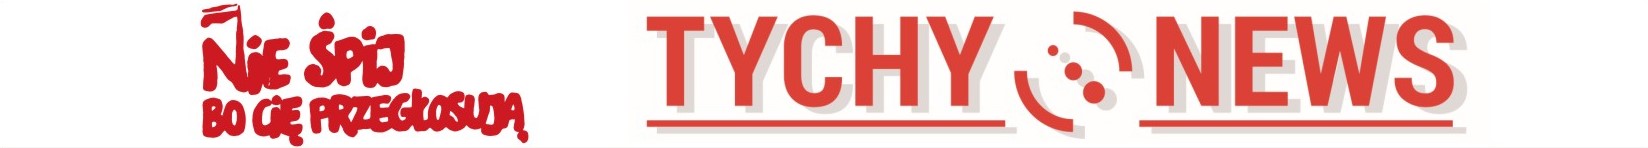 Tychy News